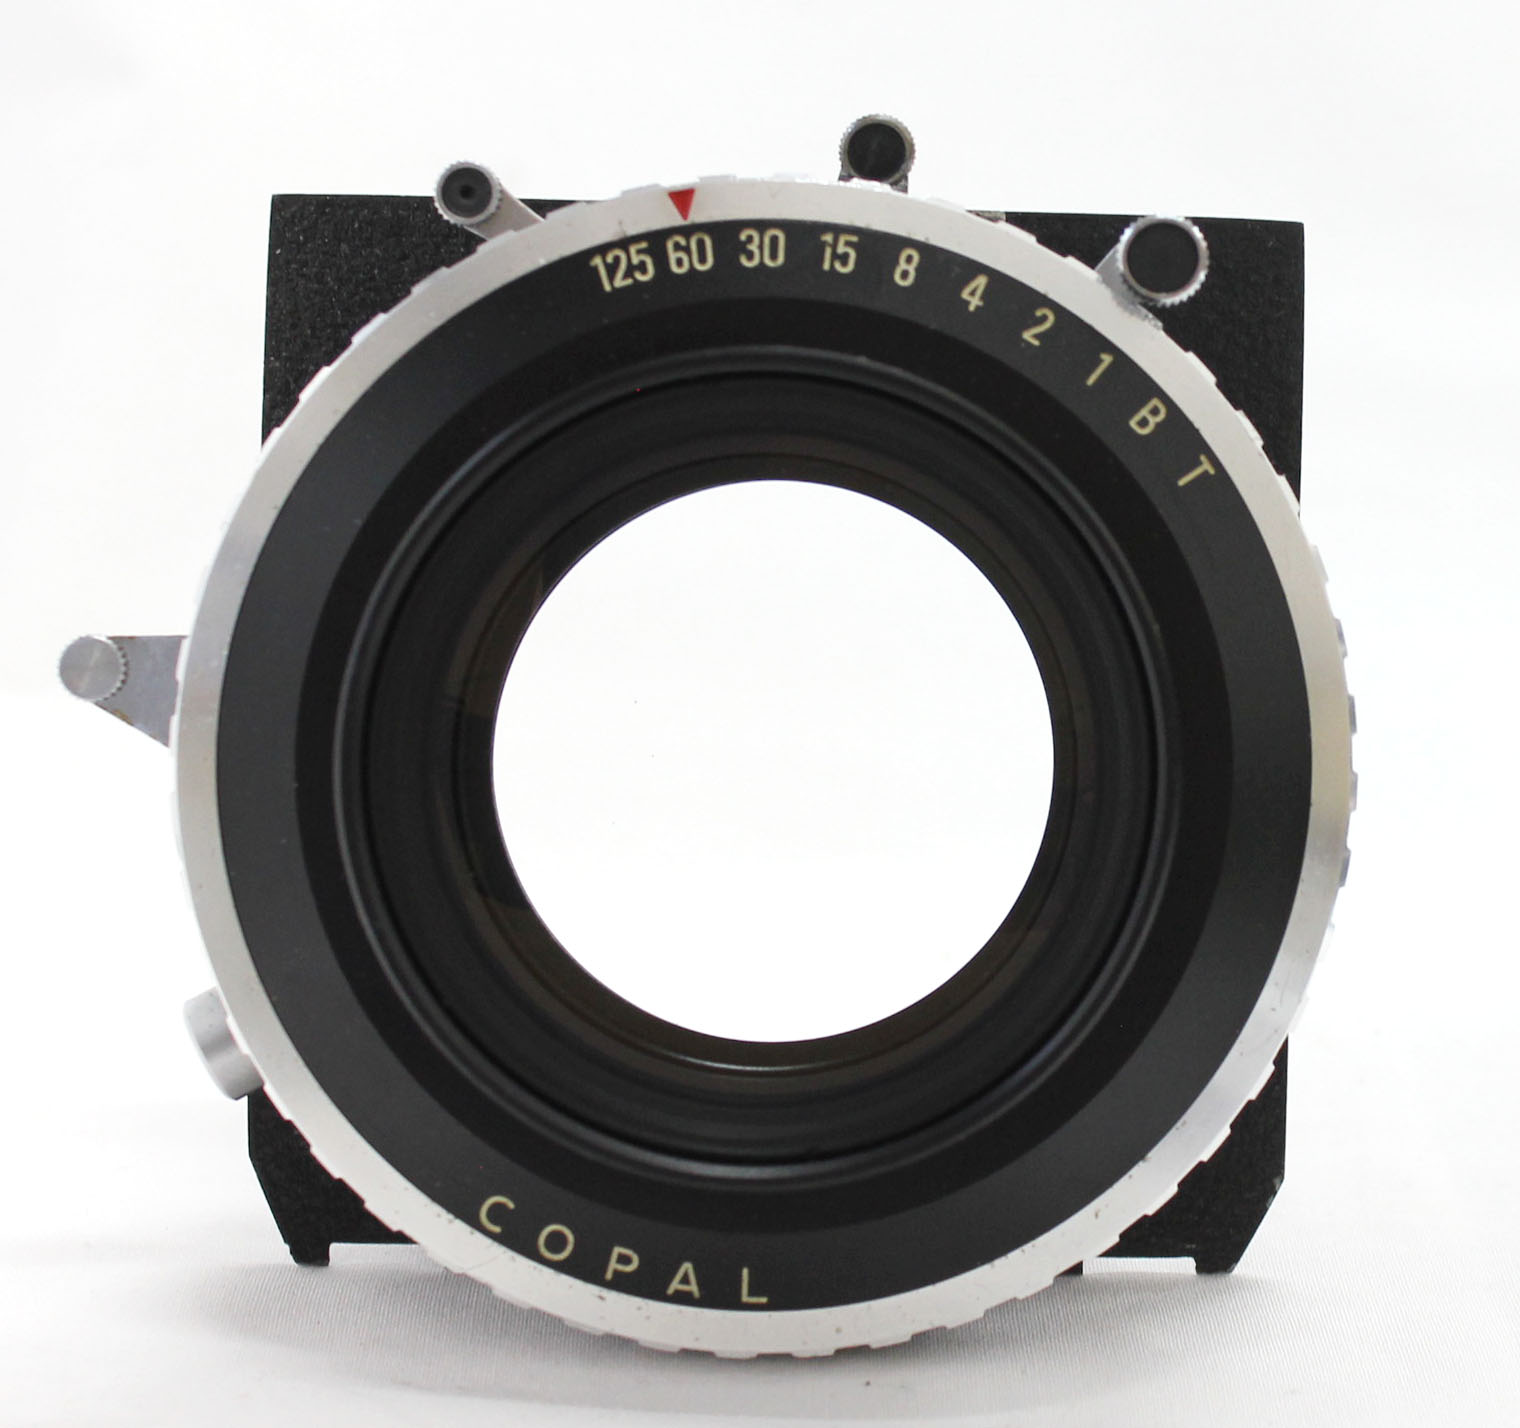  Fuji Fujinon C 600mm F/11.5 4x5 8x10 Large Format Lens Copal No.3 Shutter from Japan Photo 8